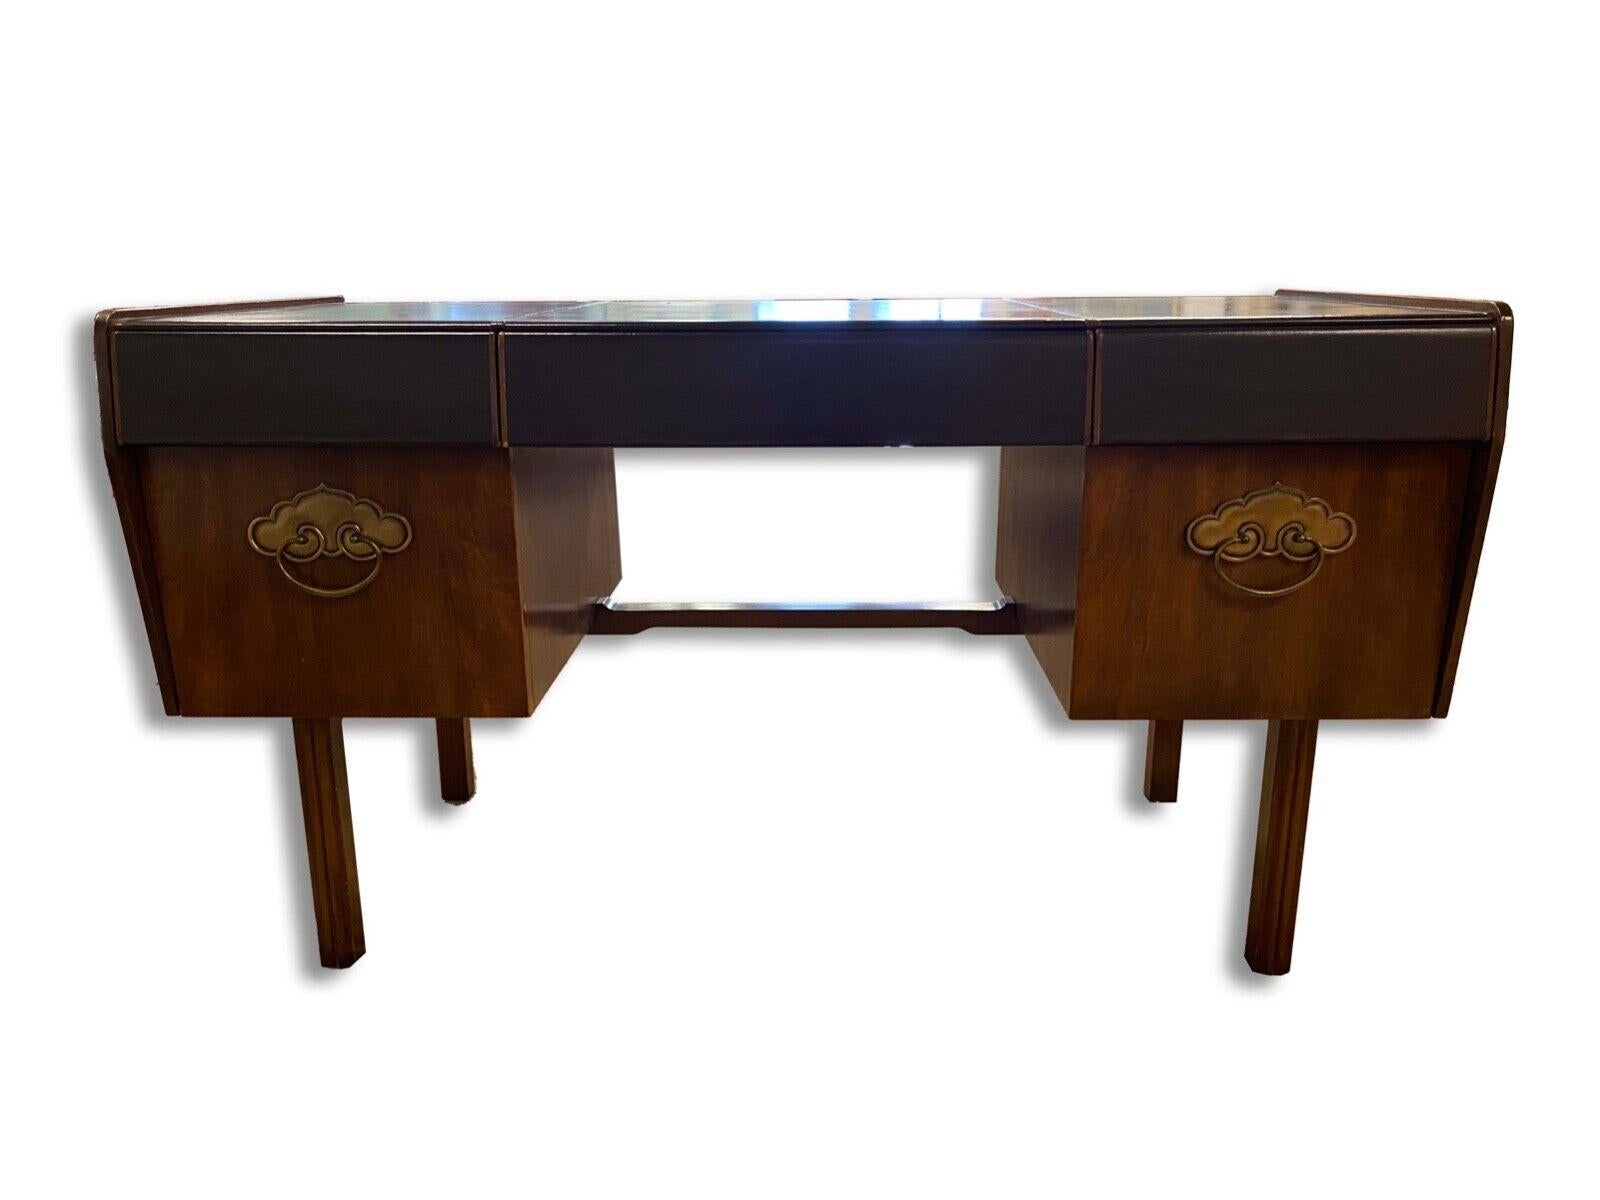 Der Bert England for Widdicomb Leather Top Desk ist eine bemerkenswerte Mischung aus Stil und Funktionalität. Dieser Schreibtisch wurde von dem renommierten Designer Bert England entworfen und zeichnet sich durch exquisite Handwerkskunst und Liebe